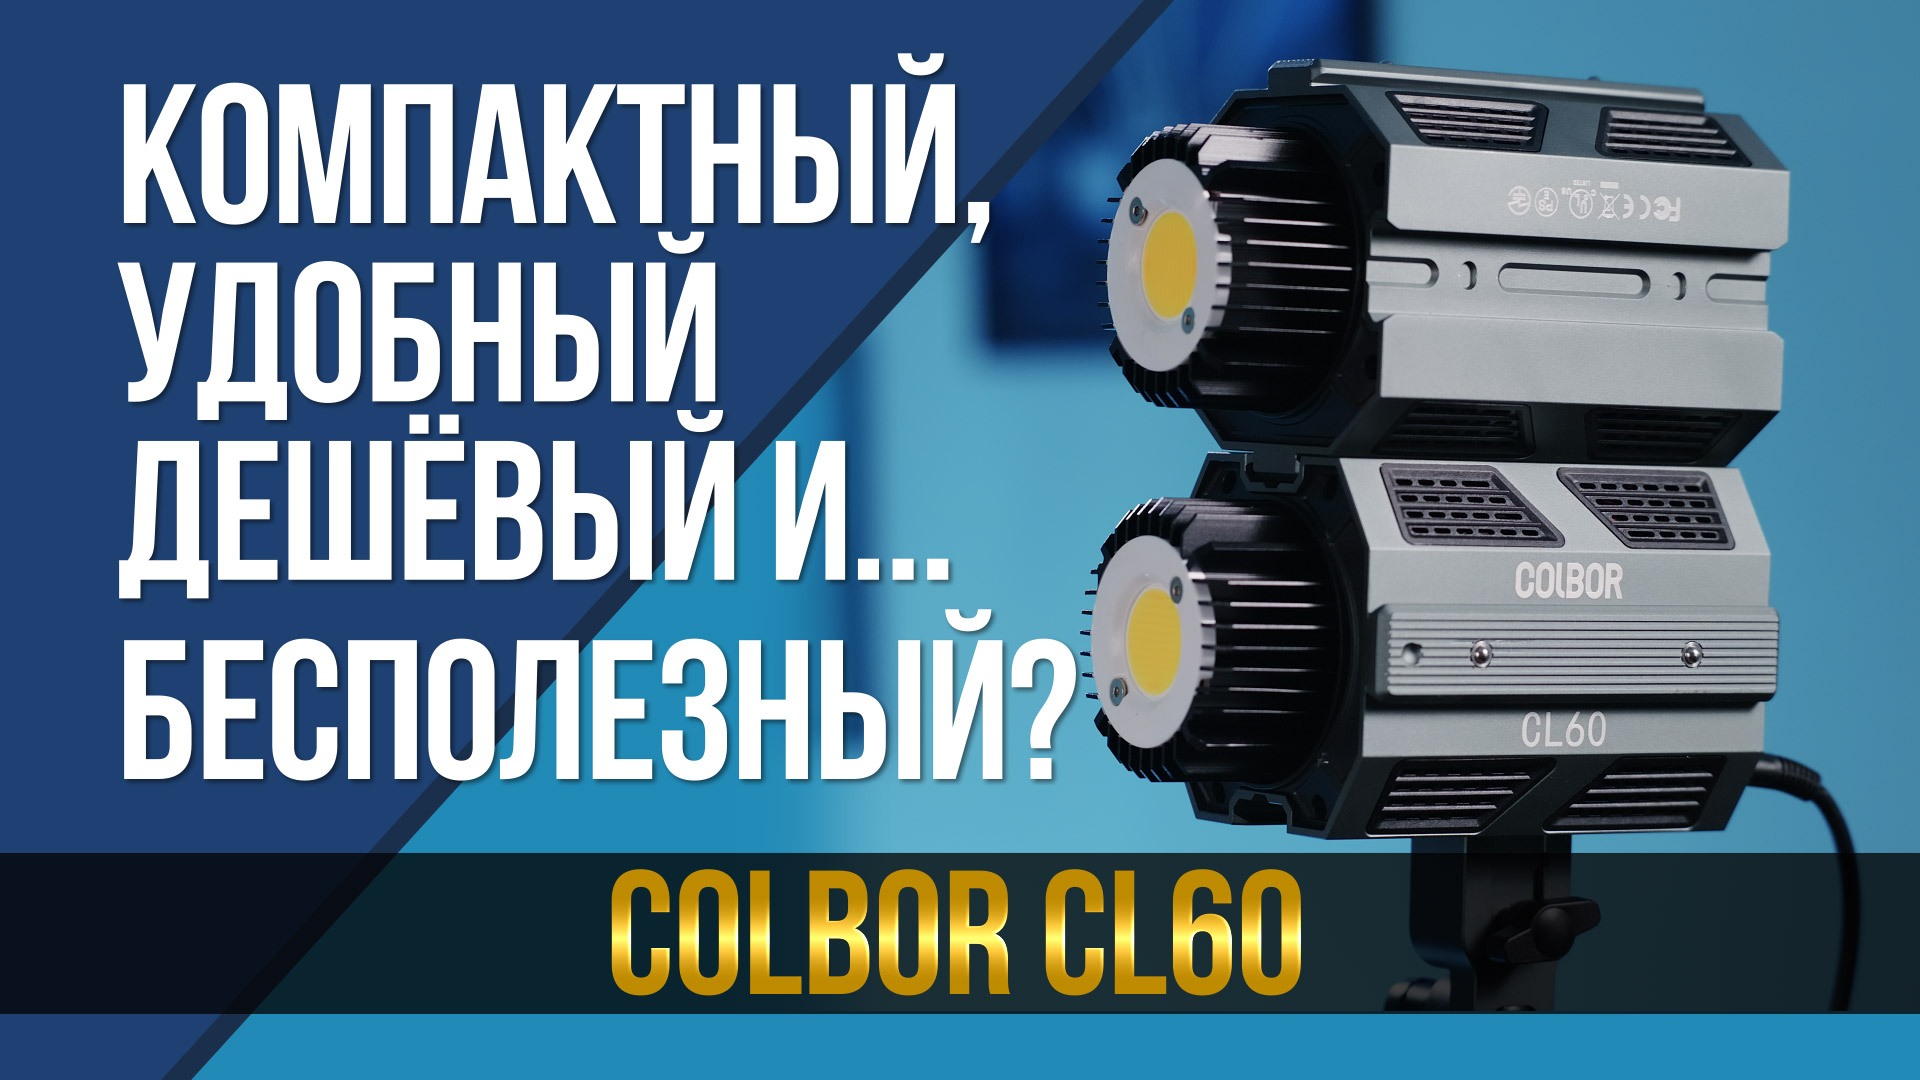 Компактный, удобный, дешёвый и... бесполезный? 60 Вт осветитель COLBOR CL60.